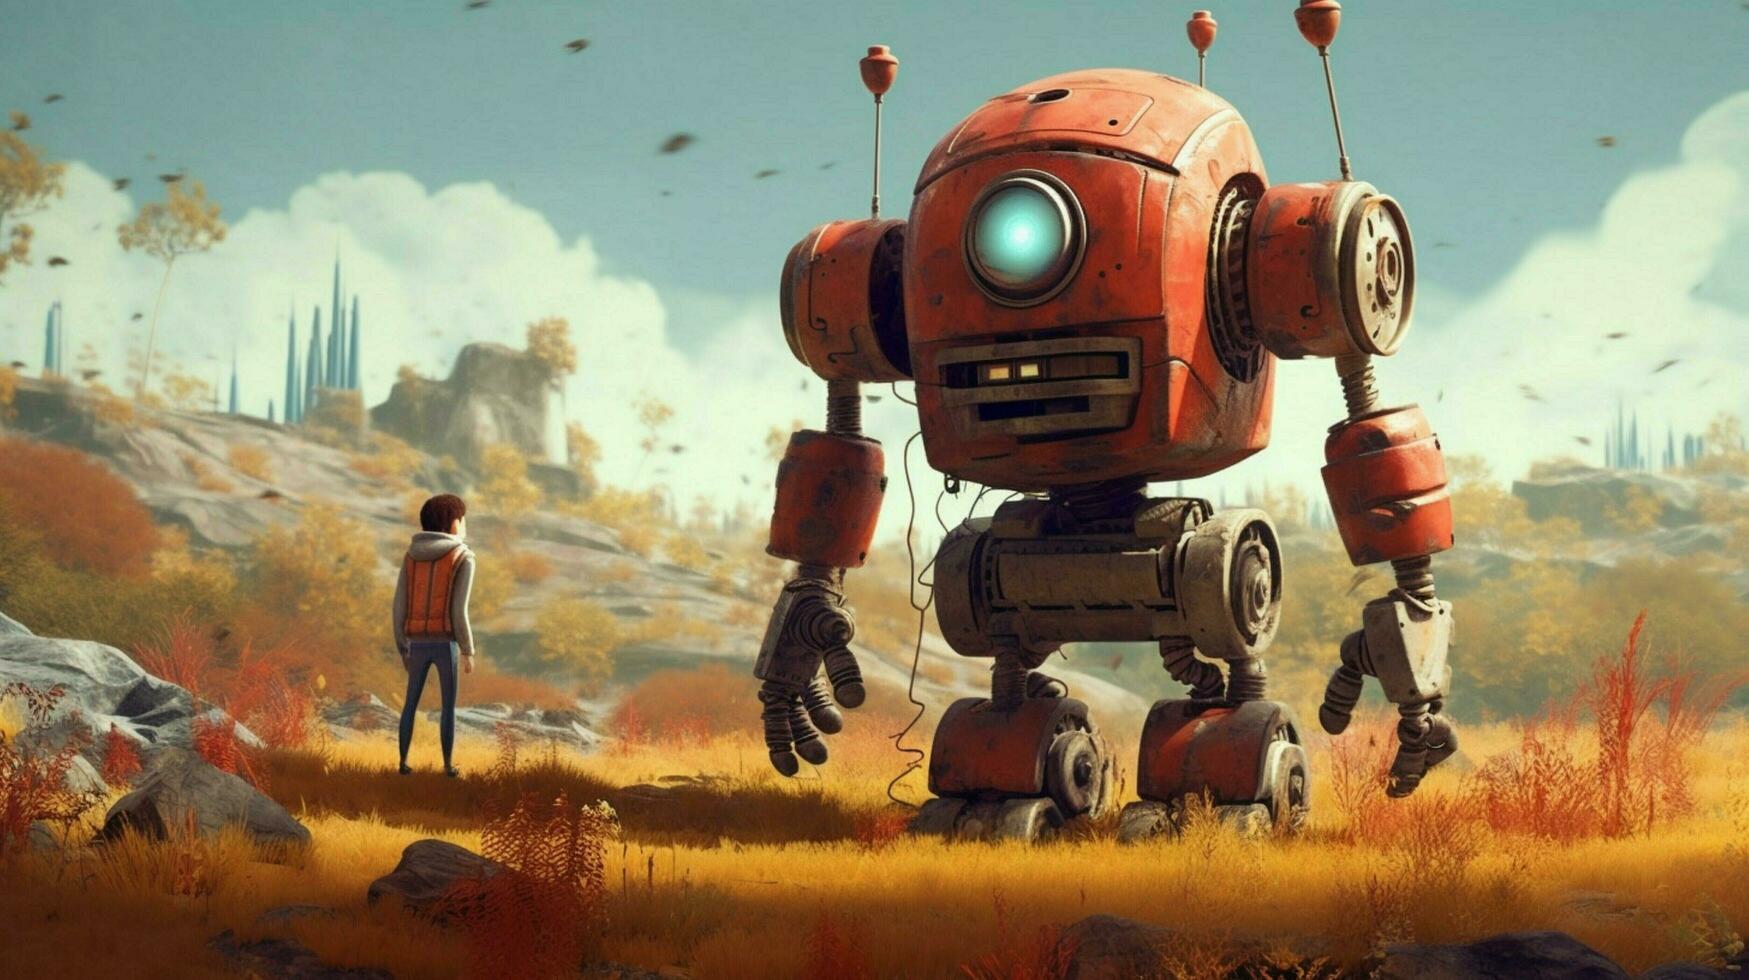 uma poster para uma jogos chamado a robô foto